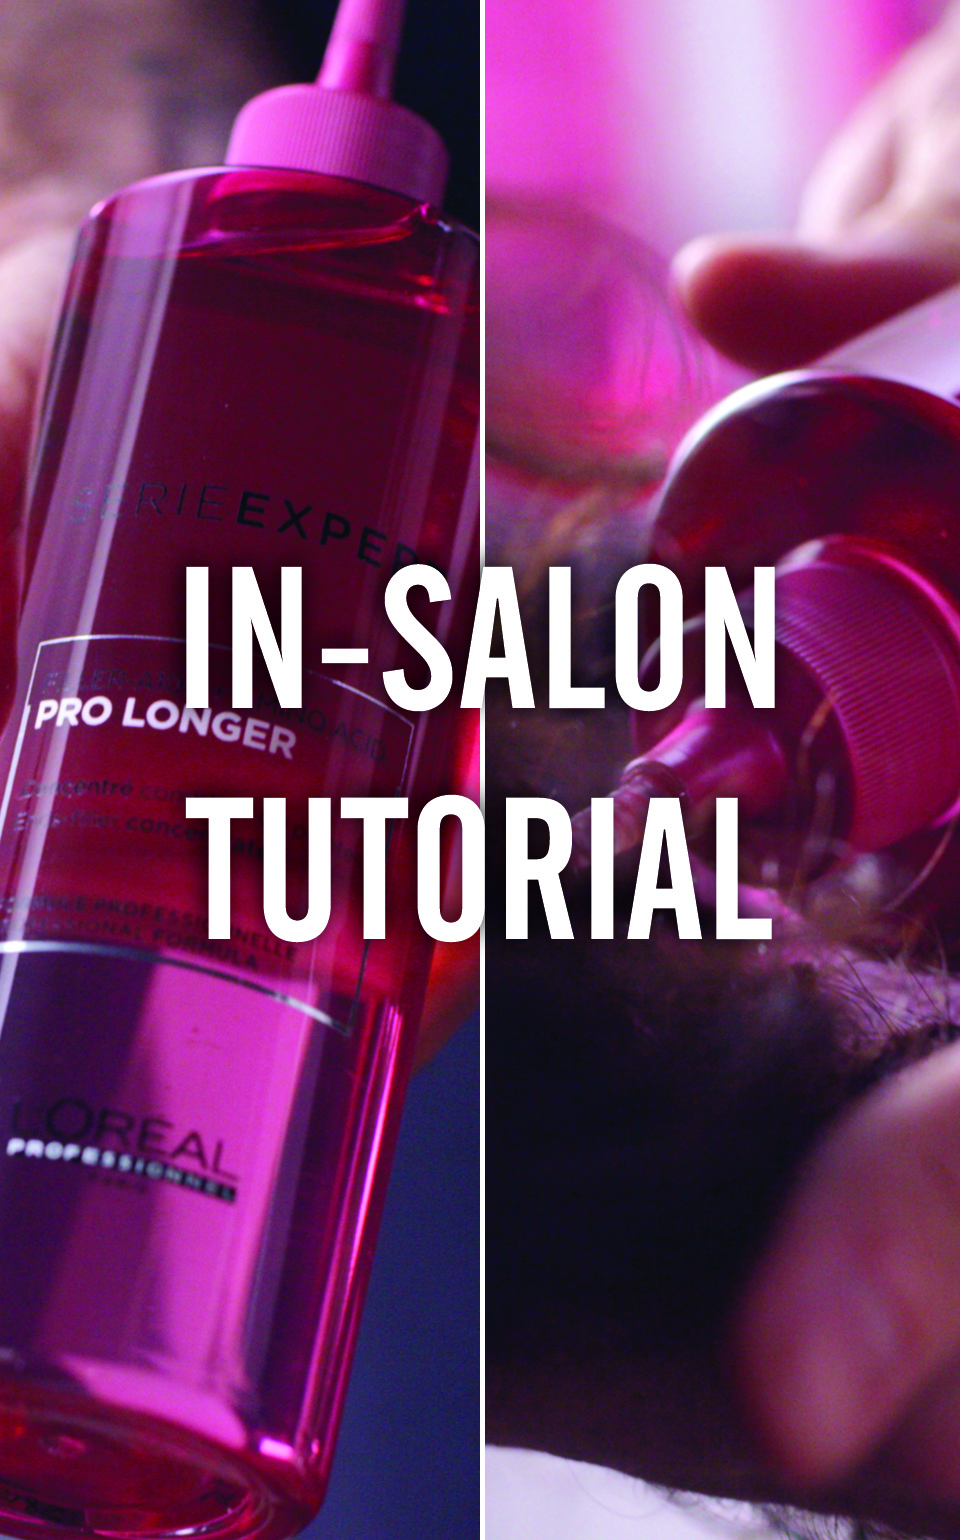 L'Oréal Professionnel série Expert tutoriel salon